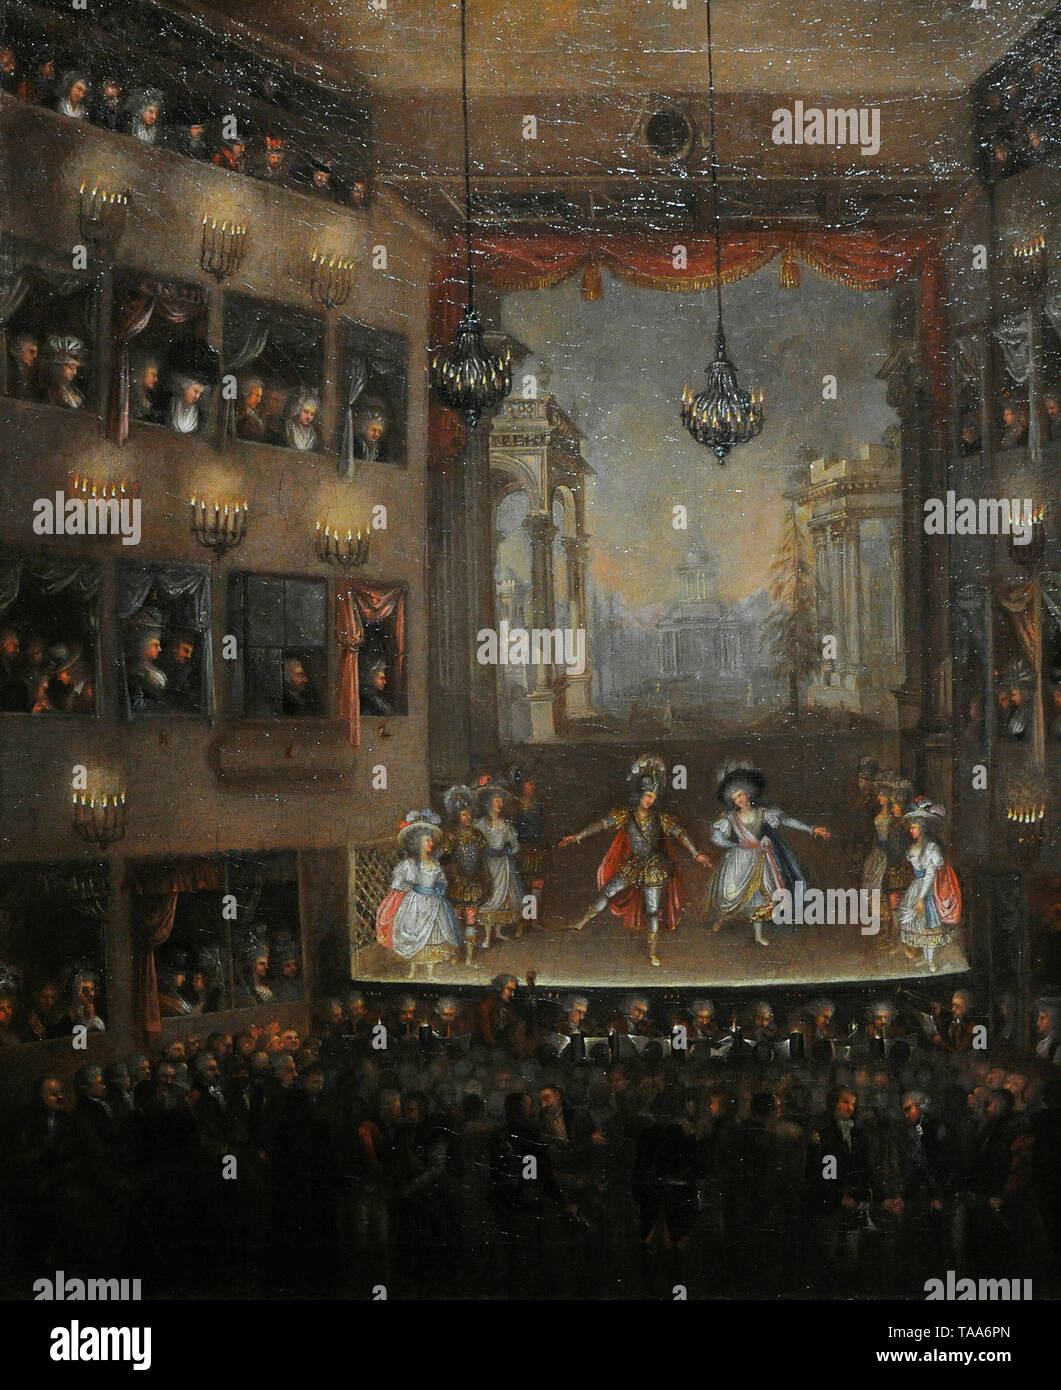 Le première de l'Opéra Pirro par Giovanni Paisiello au Théâtre National de Varsovie en 1790, ca. 1790. Musée national. Varsovie. La Pologne. Banque D'Images